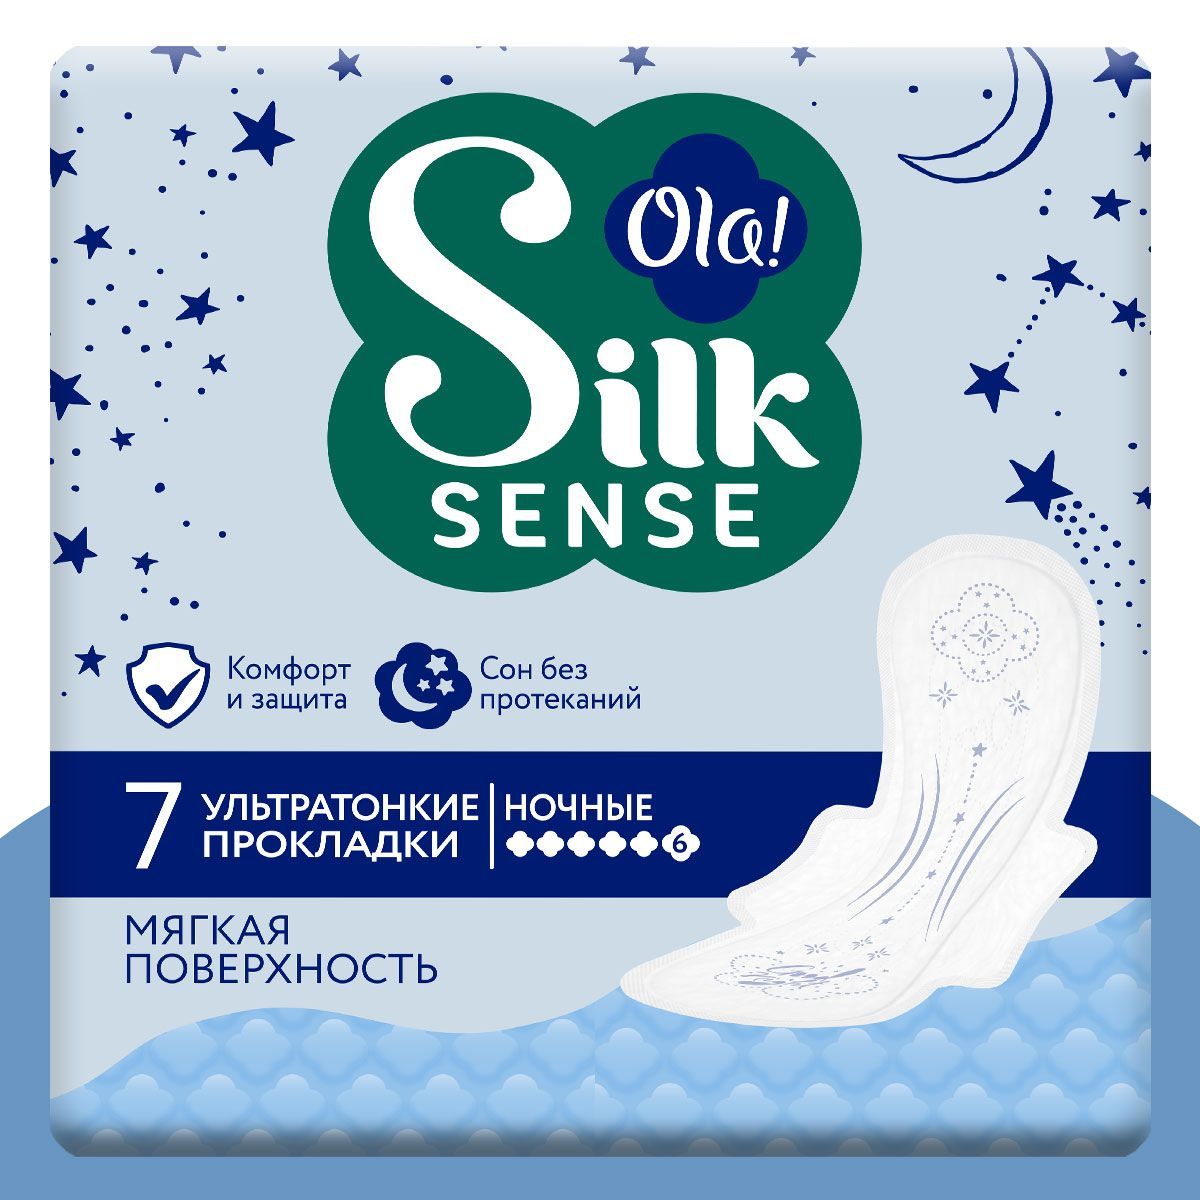 Ночные ультратонкие прокладки Ola! с крылышками Silk Sense Ultra Night мягкая поверхность без аромата 7 шт - фото 1